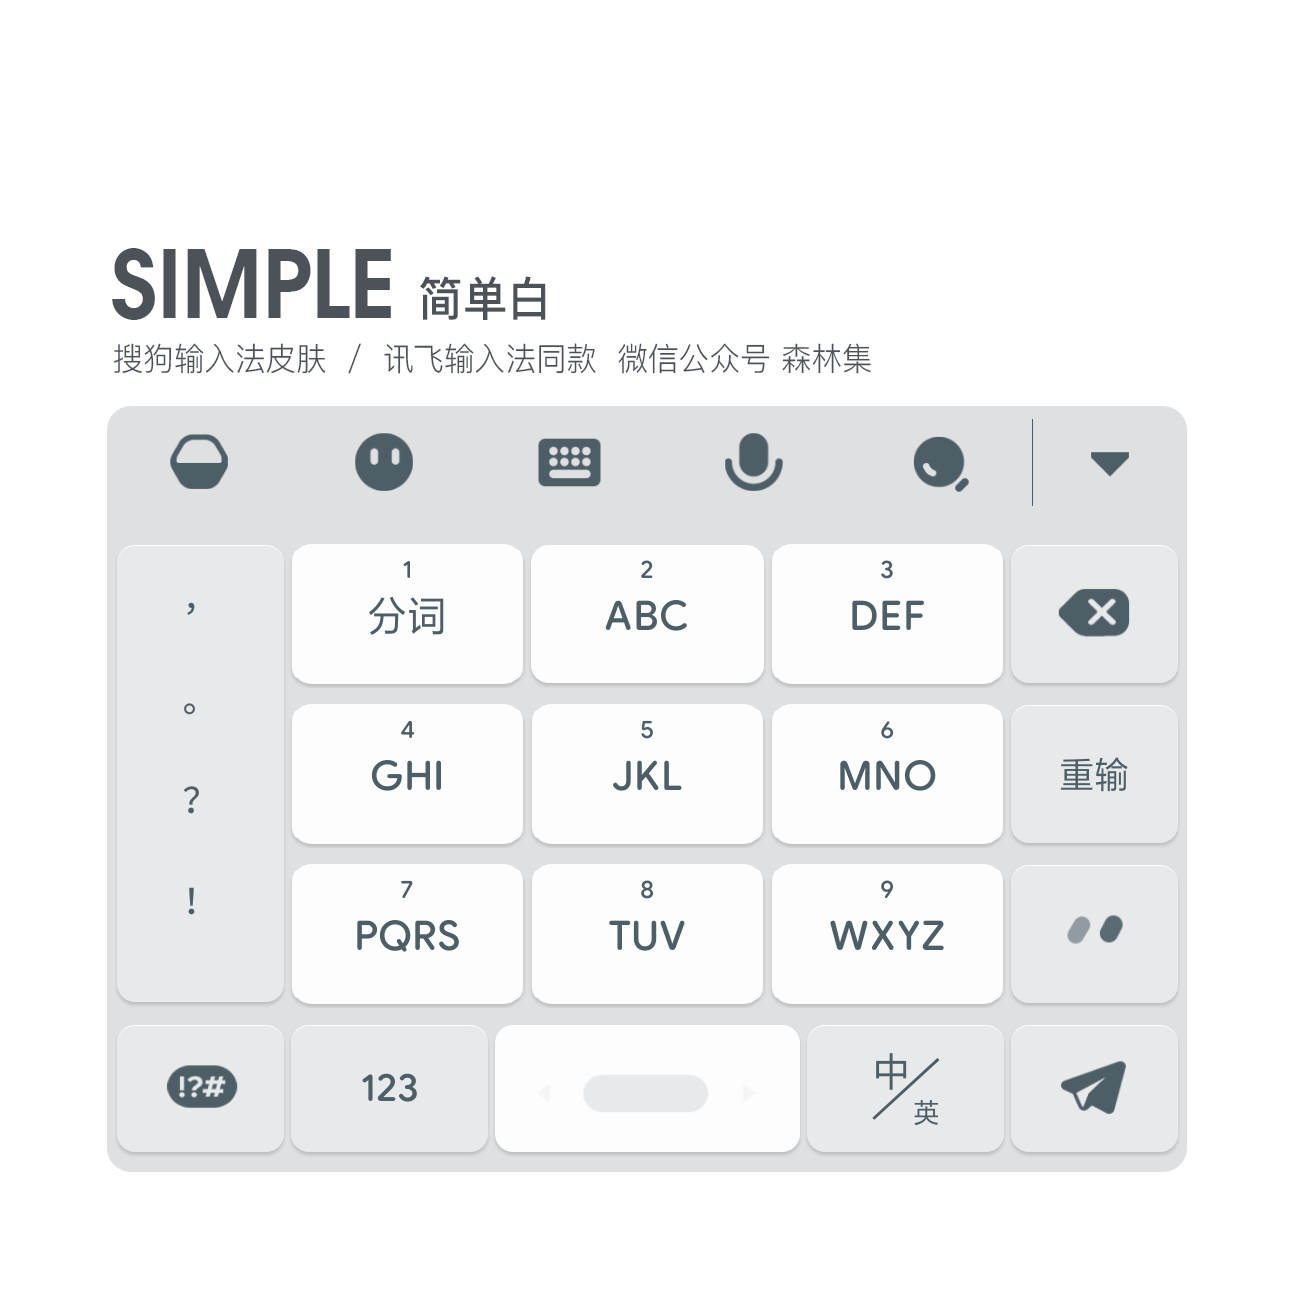 《SIMPLE 》简单白 / 简洁干净版皮肤 / 搜狗输入法 / 安卓适用